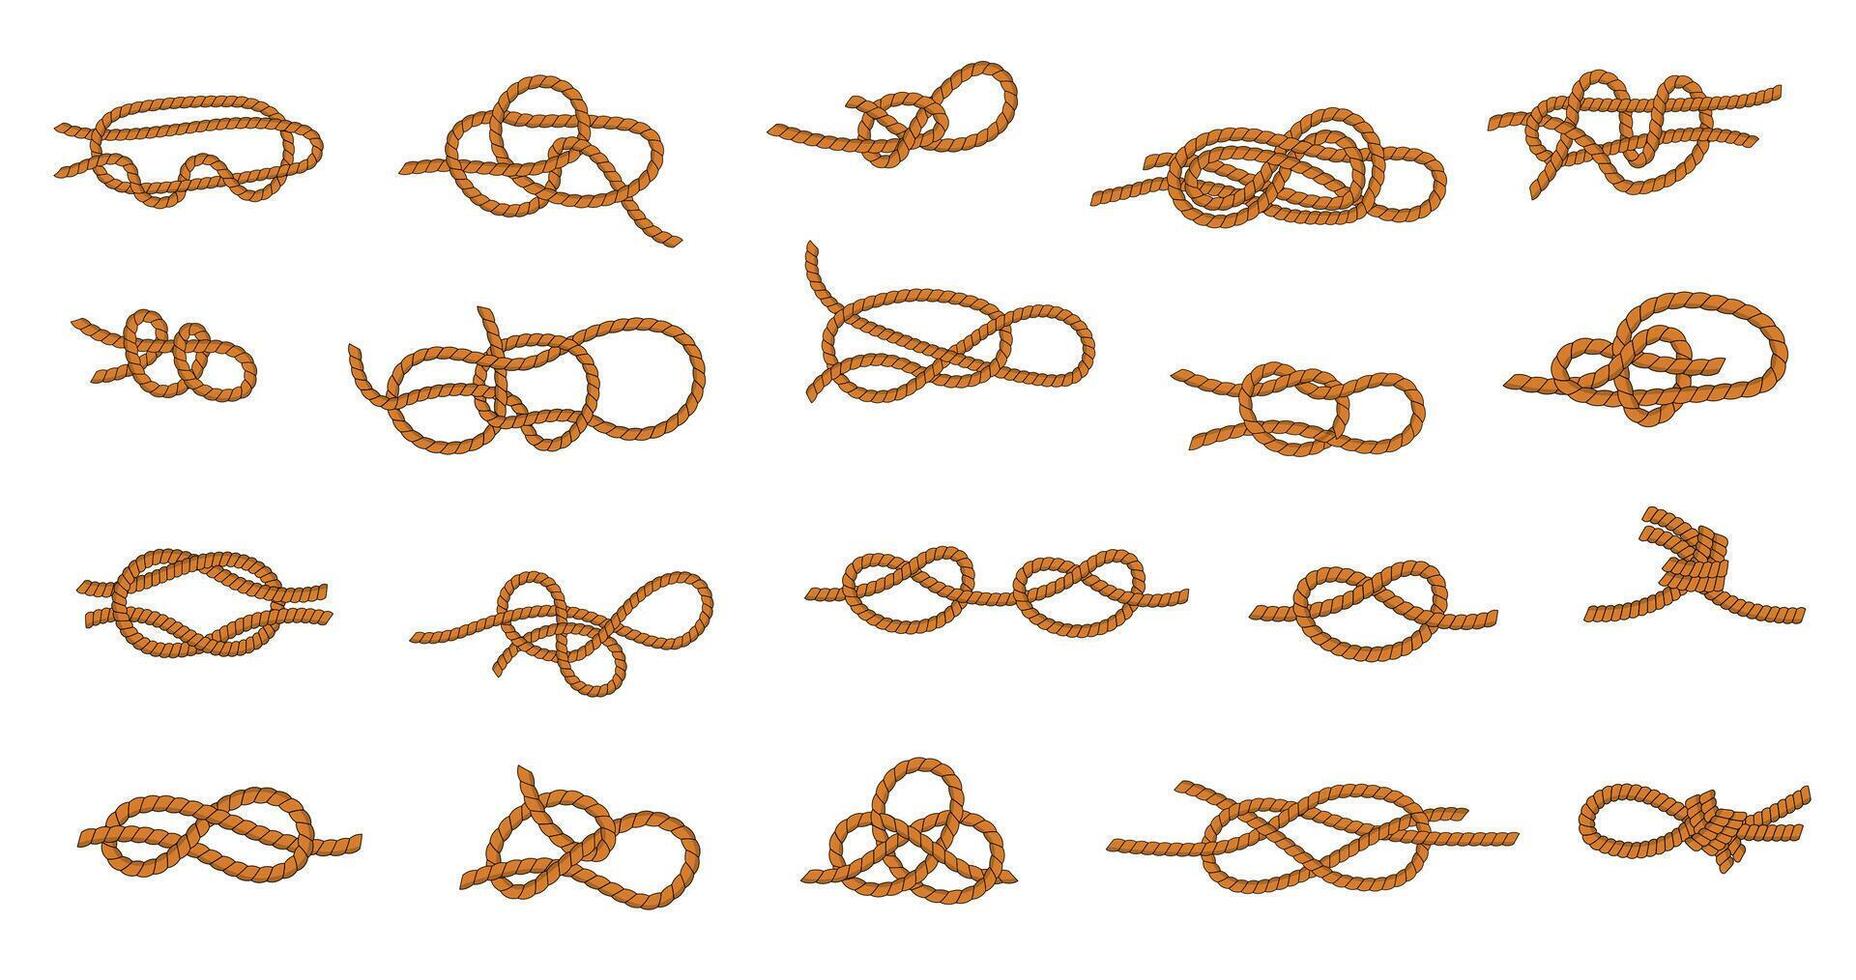 cuerda nudo. marina y náutico corbatas y hilos para paseo en barco y navegación, diferente tipos de atadura nudos gráfico recopilación. vector anudado cuerda conjunto